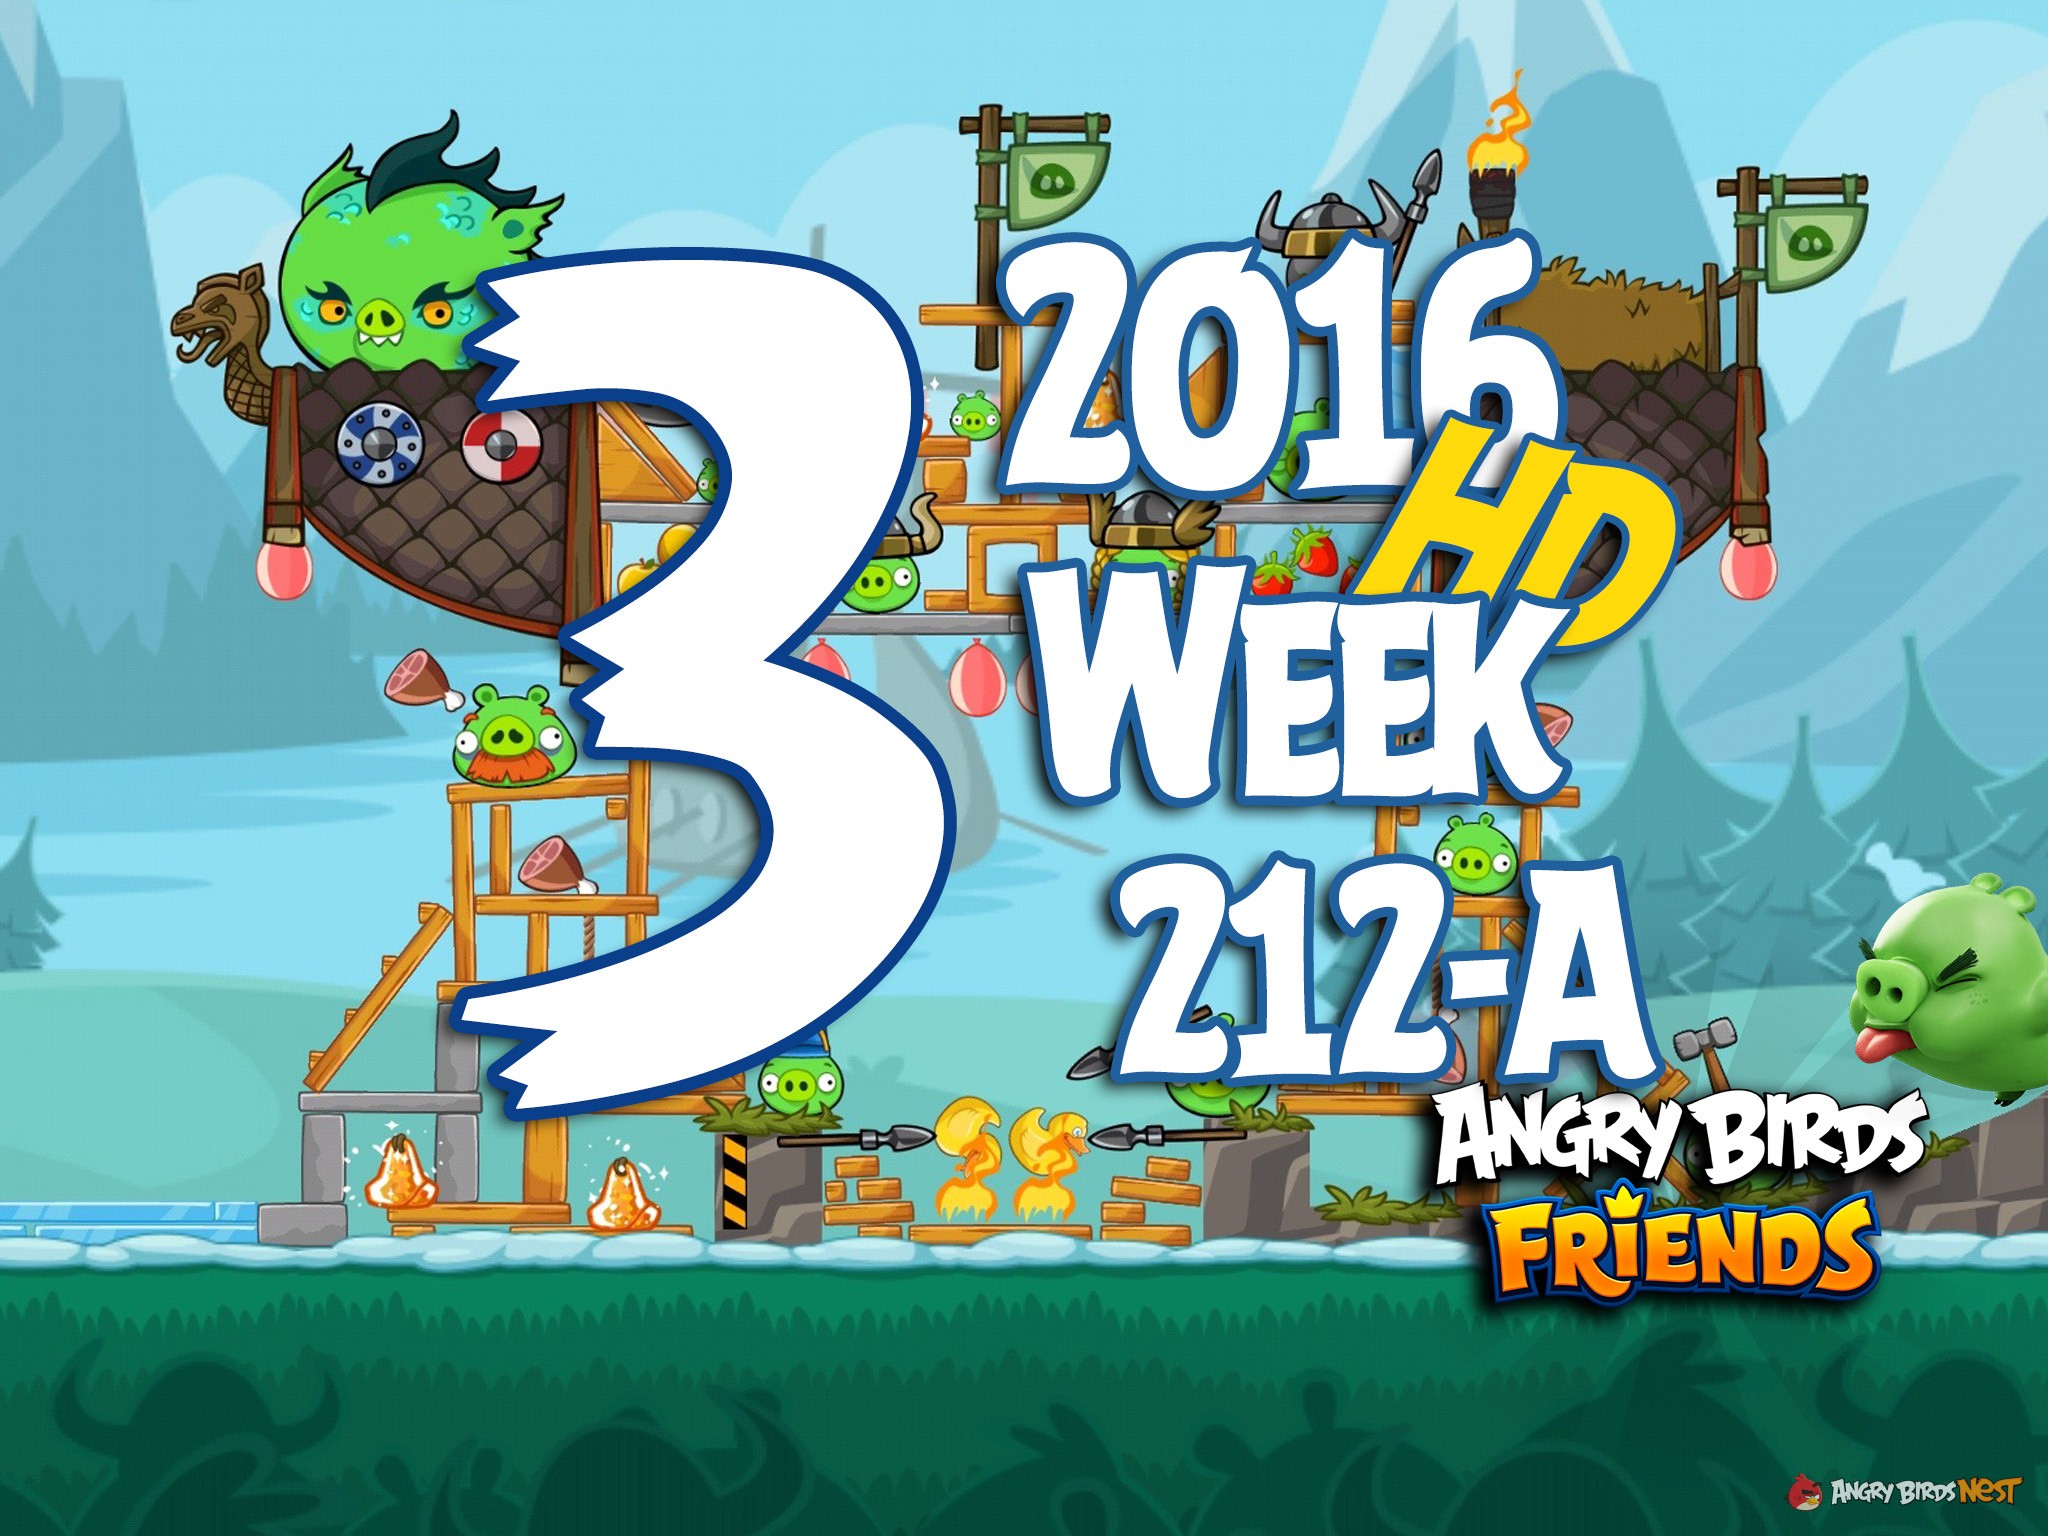 Angry Birds Friends Tournament Level 3 Week 212 Walkthrough | 2016